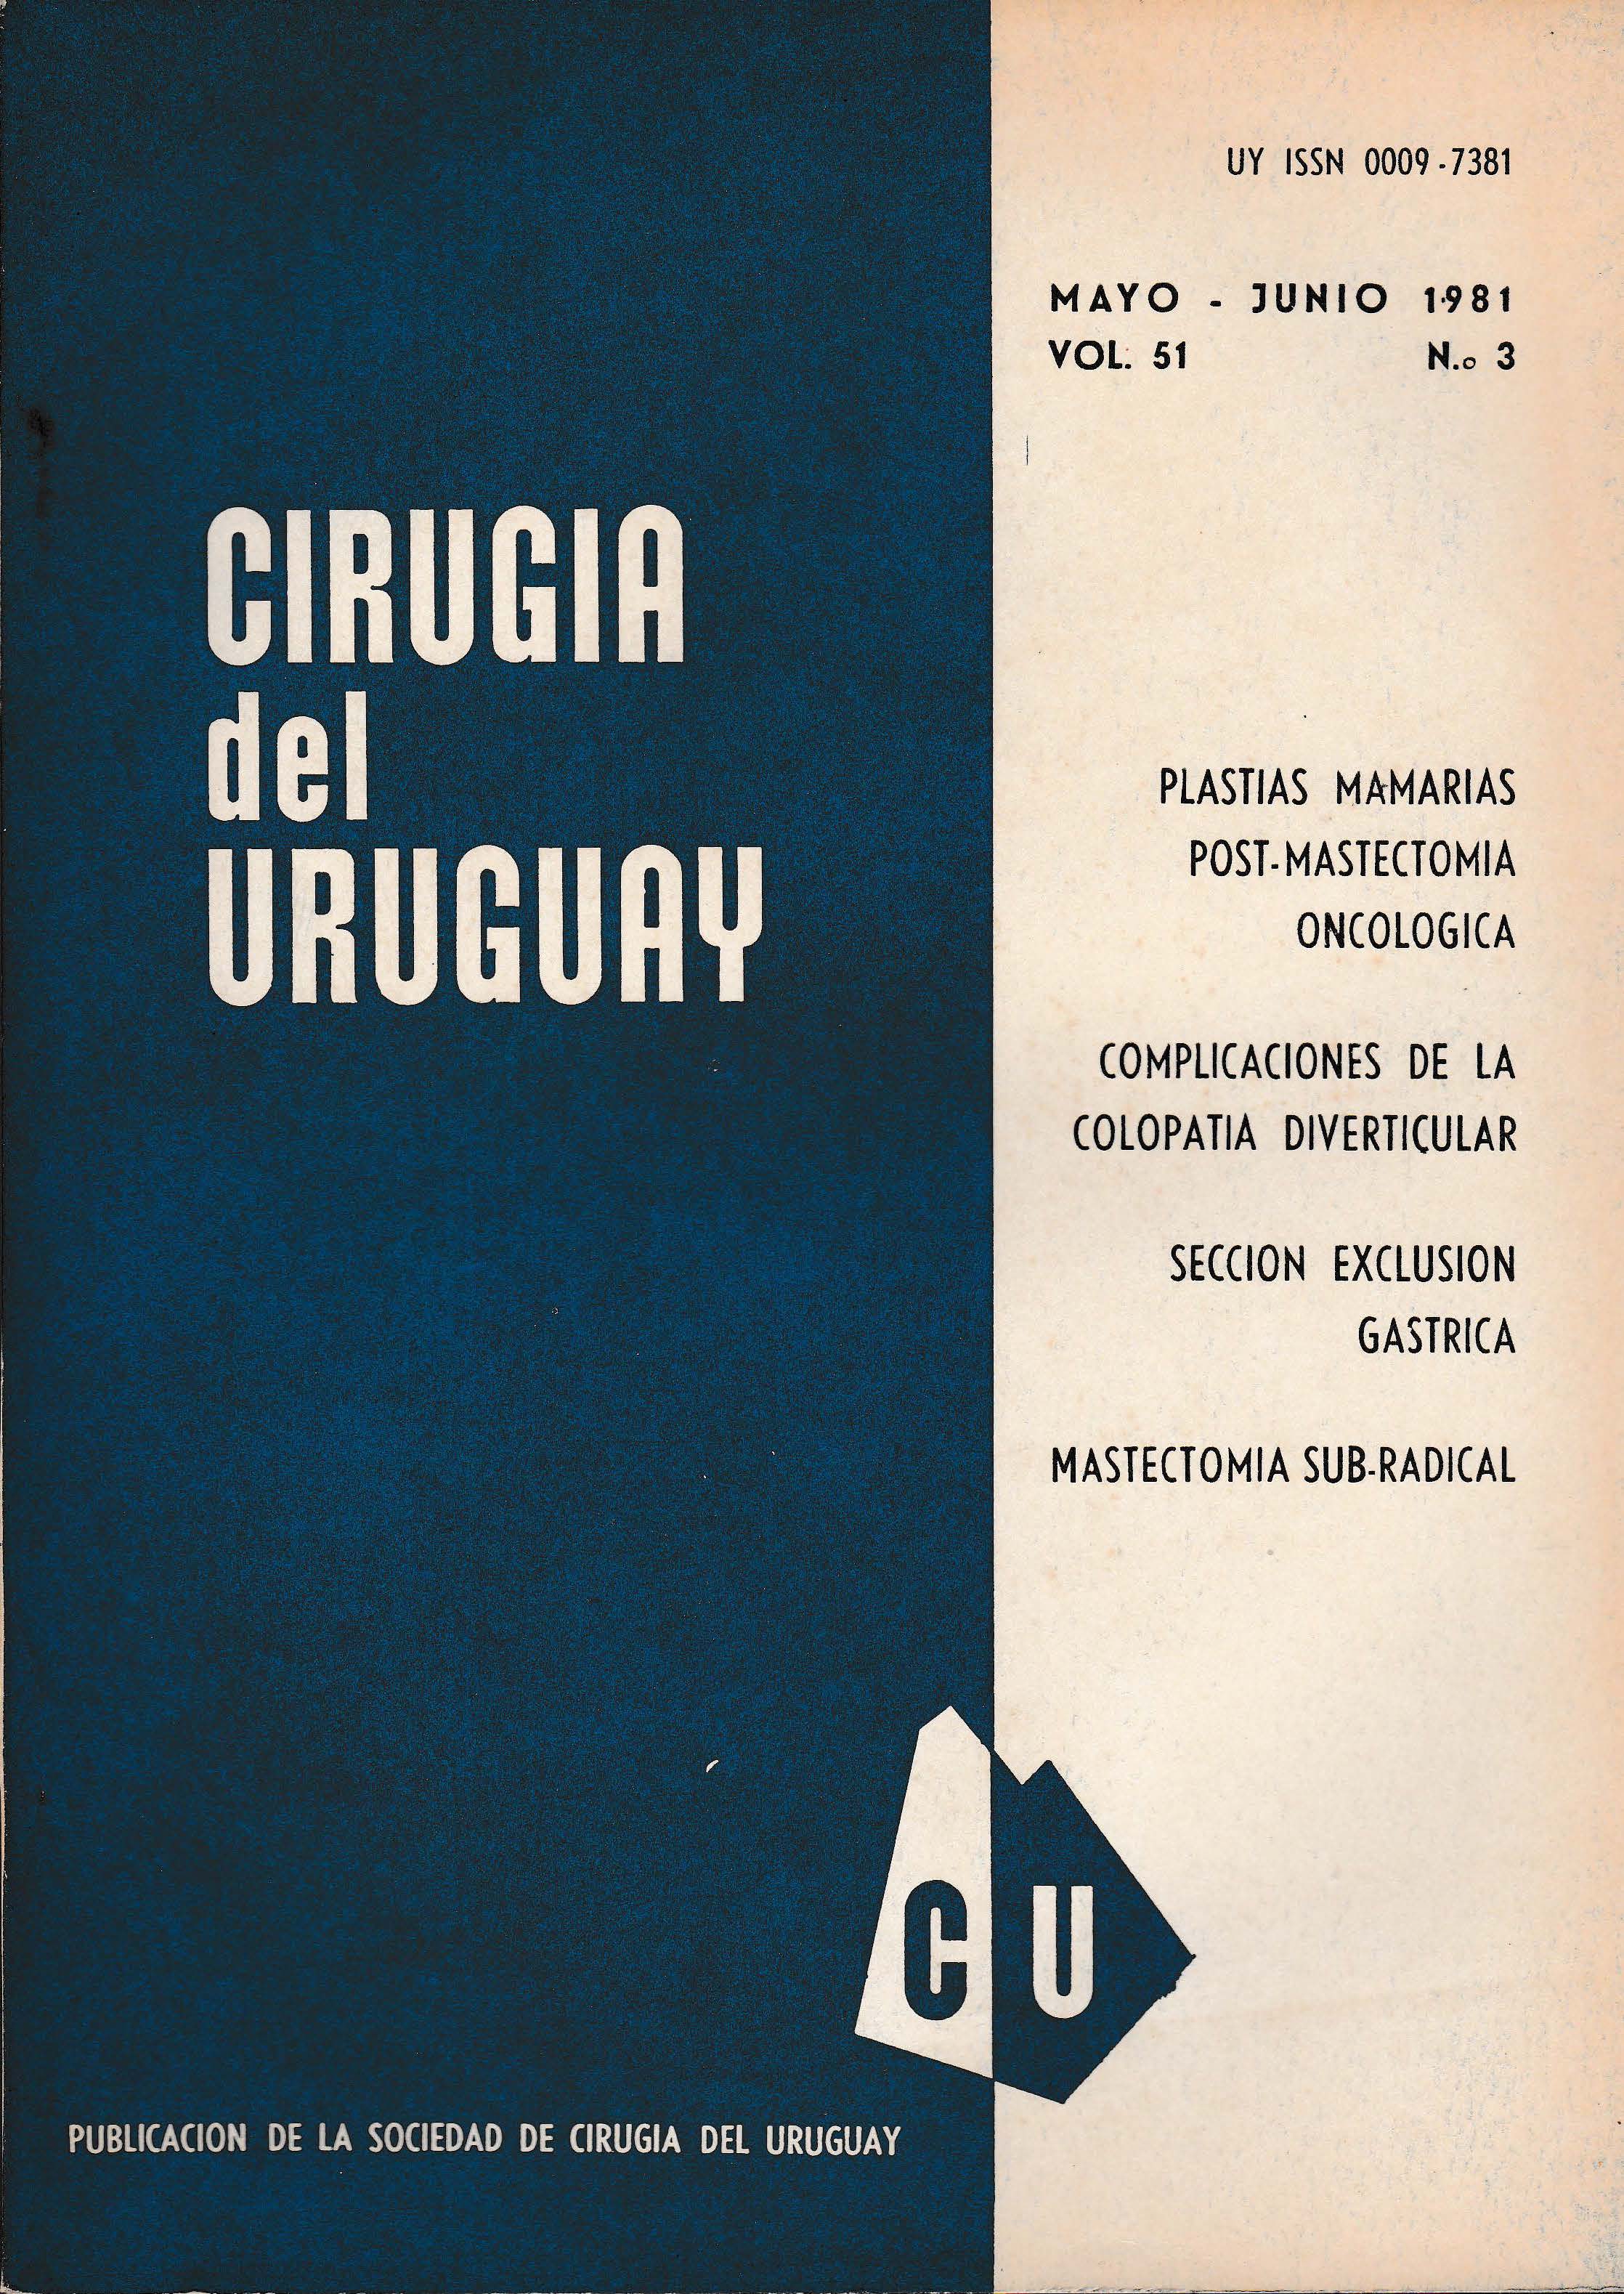 					Ver Vol. 51 Núm. 3 (1981): Cirugía del Uruguay
				